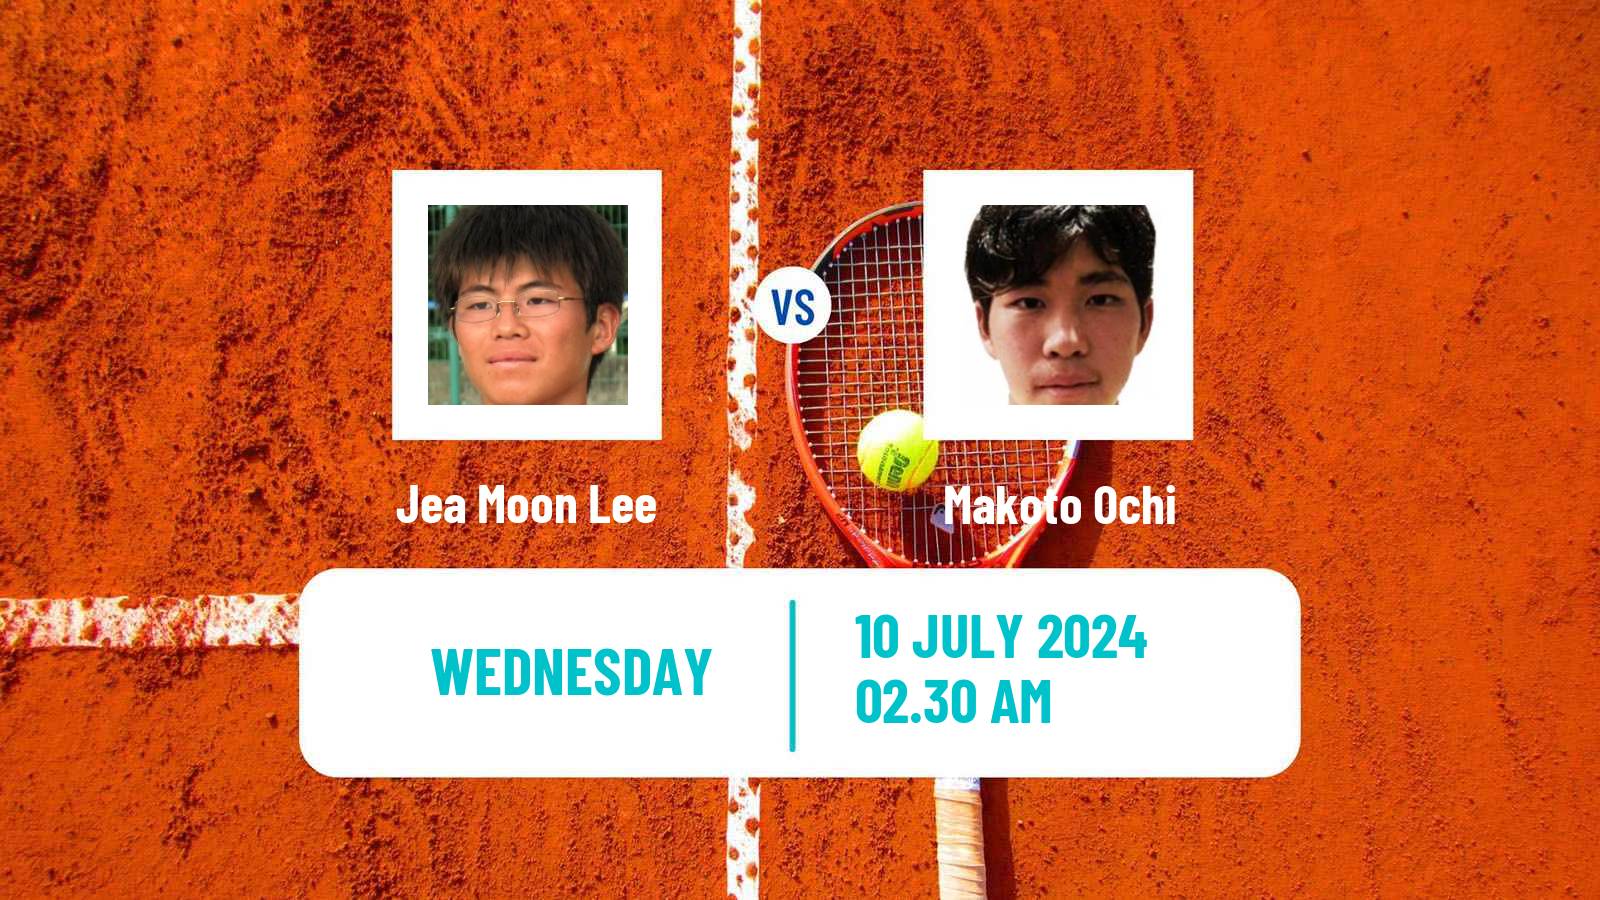 Tennis ITF M15 Tokyo 2 Men Jea Moon Lee - Makoto Ochi